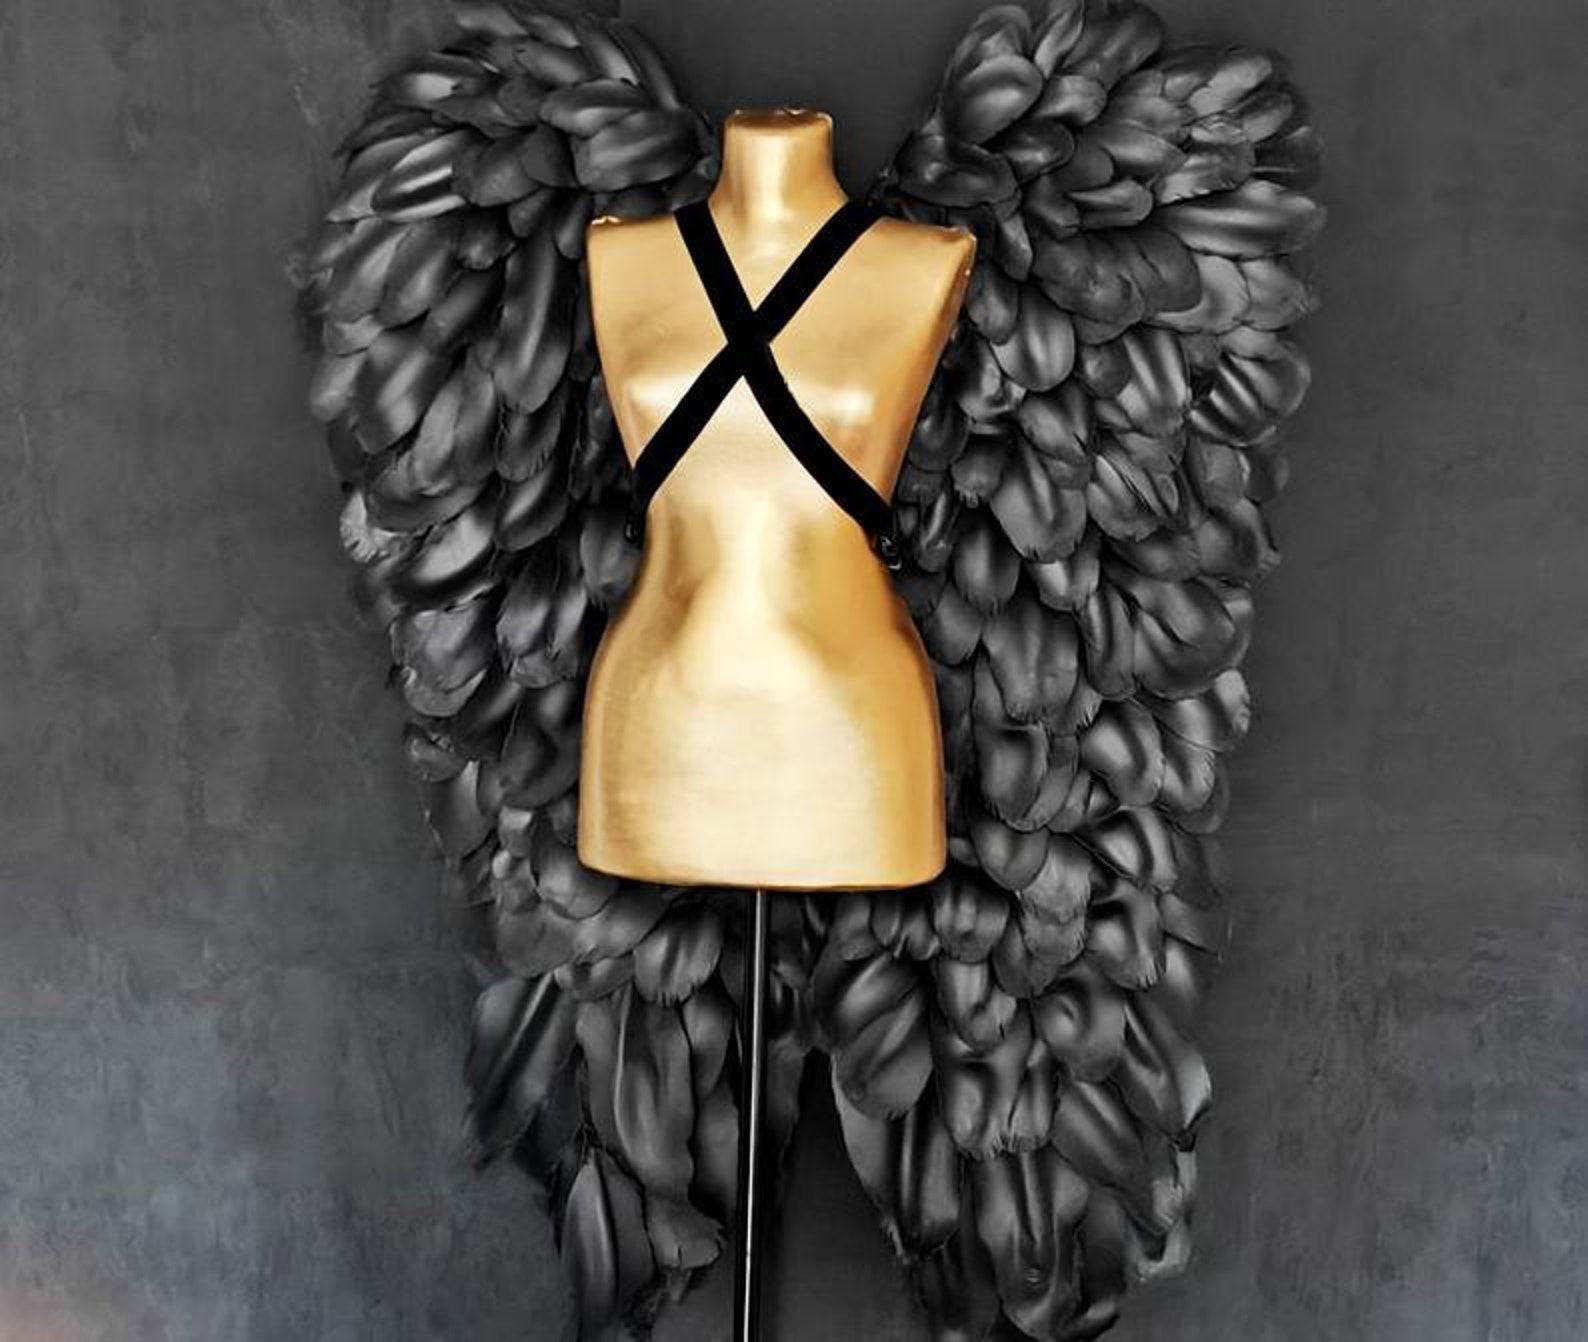 Black Wings costume angel wings cosplay/ wedding wings/ Big | Etsy